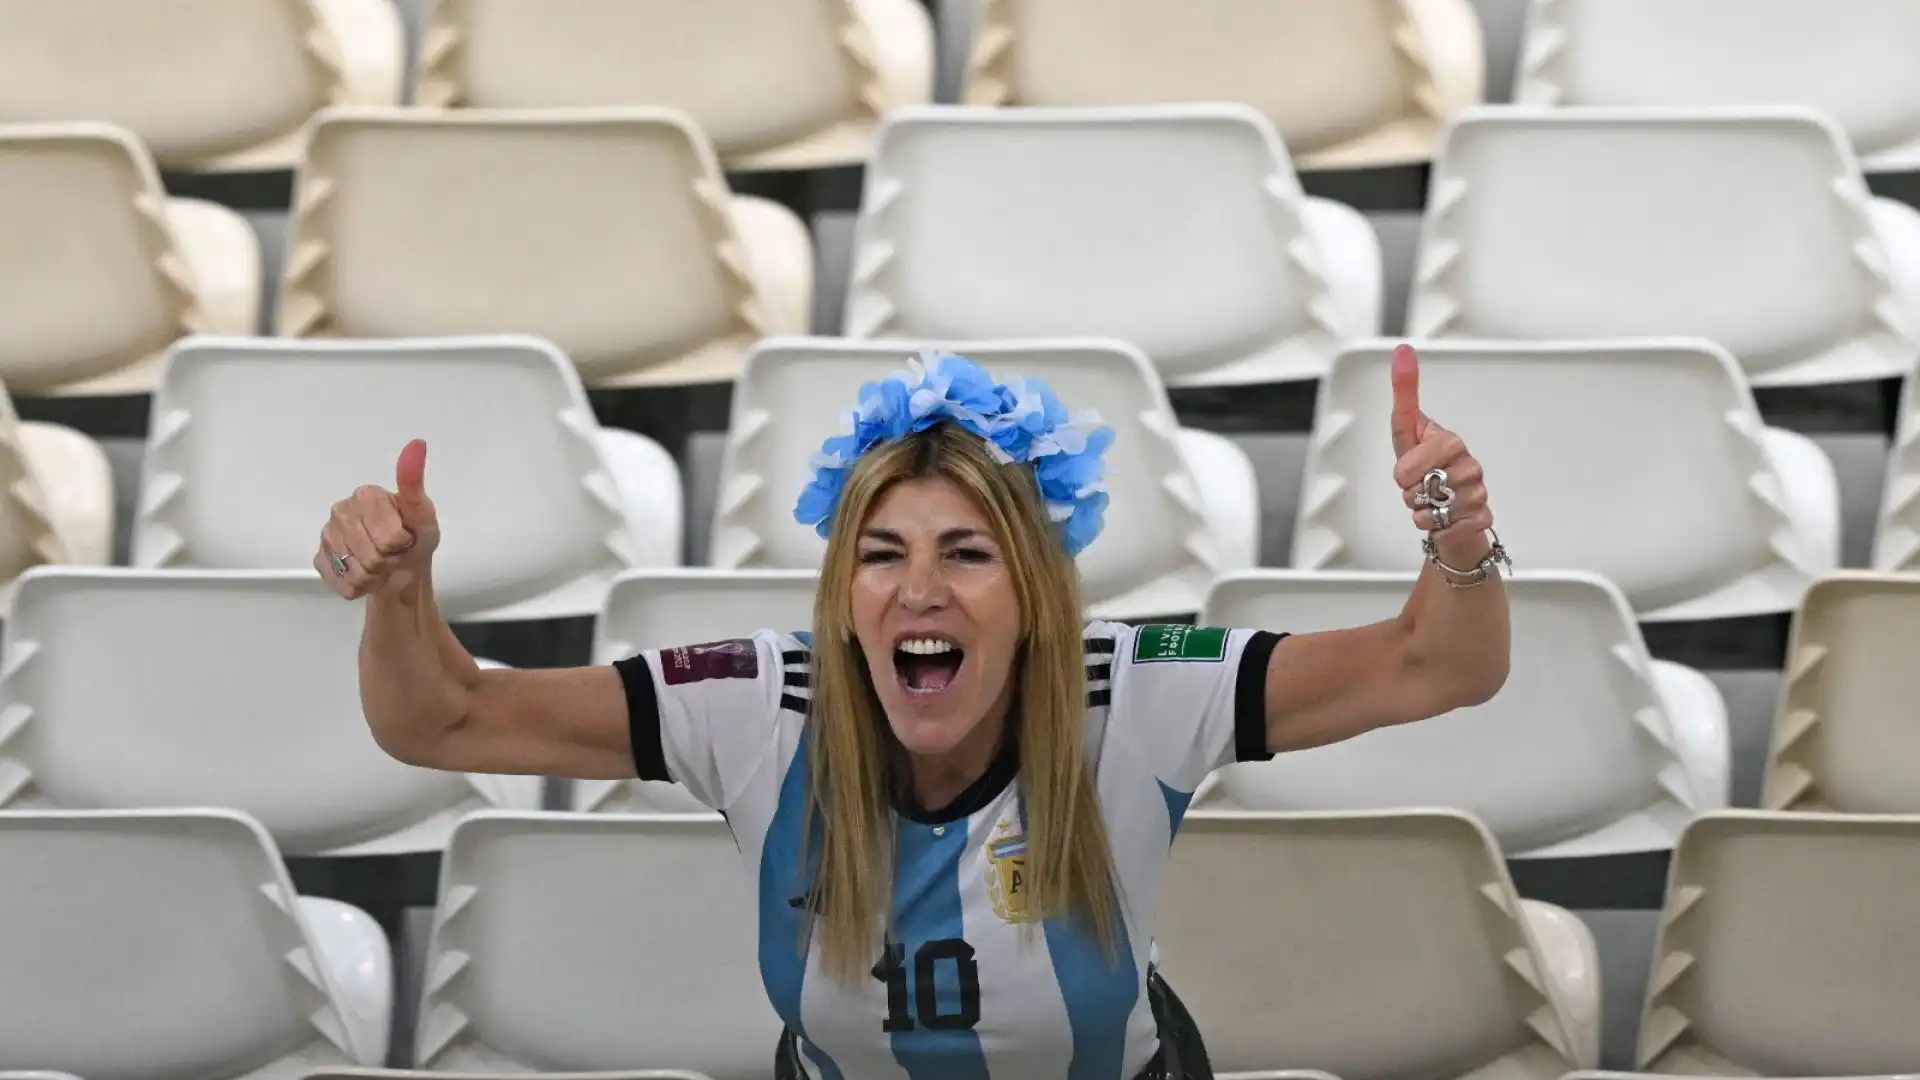 Poi però vince l'entusiasmo, soprattutto per le ragazze che sostengono l'Argentina.